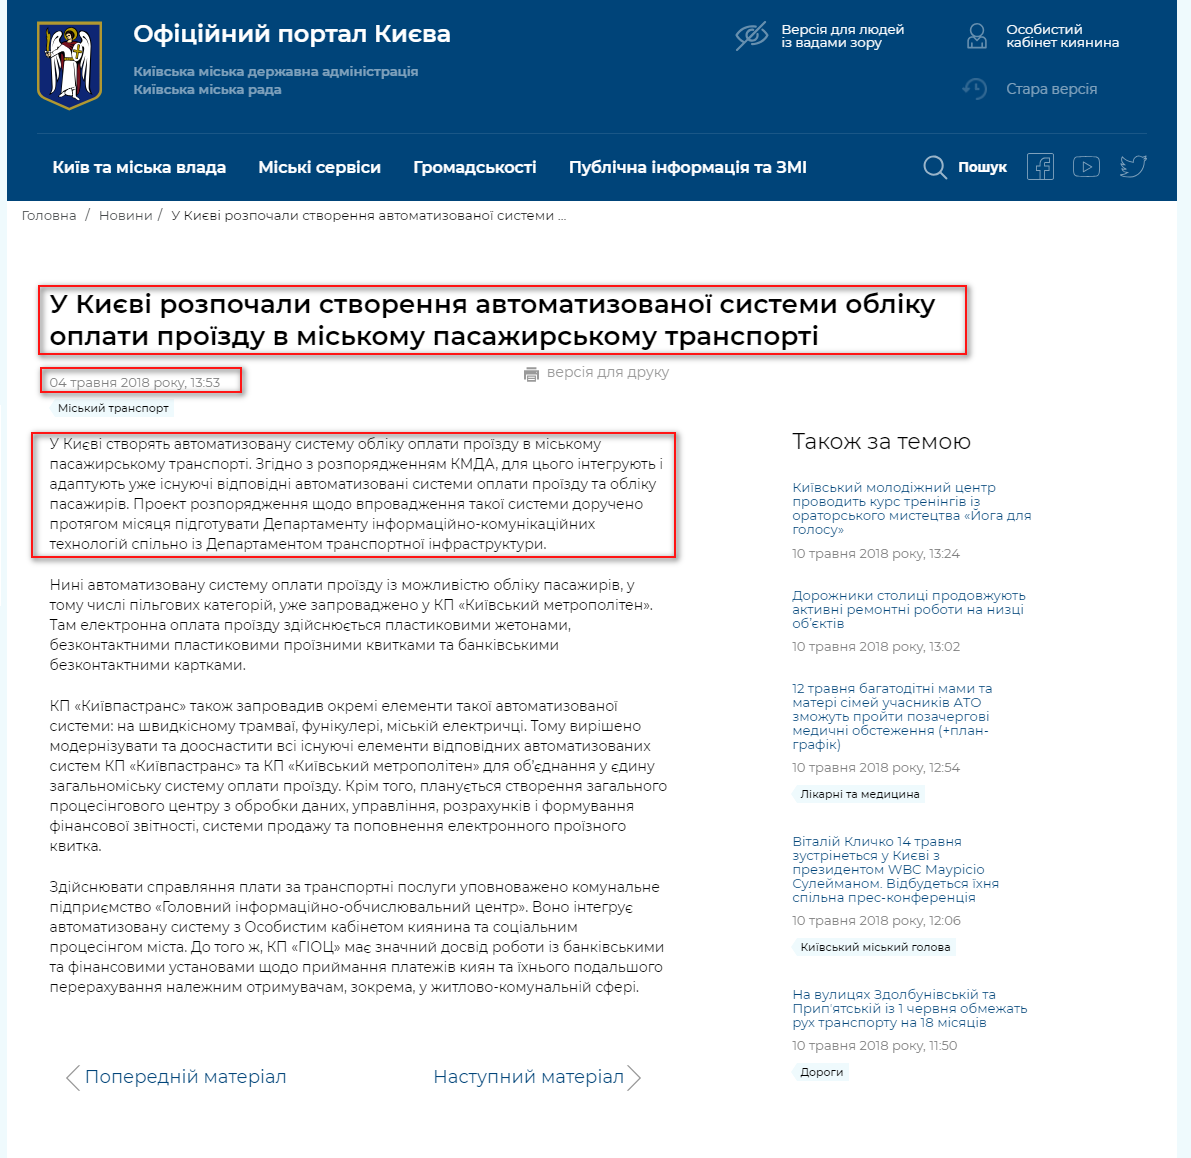 https://kyivcity.gov.ua/news/u_kiyevi_rozpochali_stvorennya_avtomatizovano_sistemi_obliku_oplati_prozdu_v_miskomu_pasazhirskomu_transporti.html